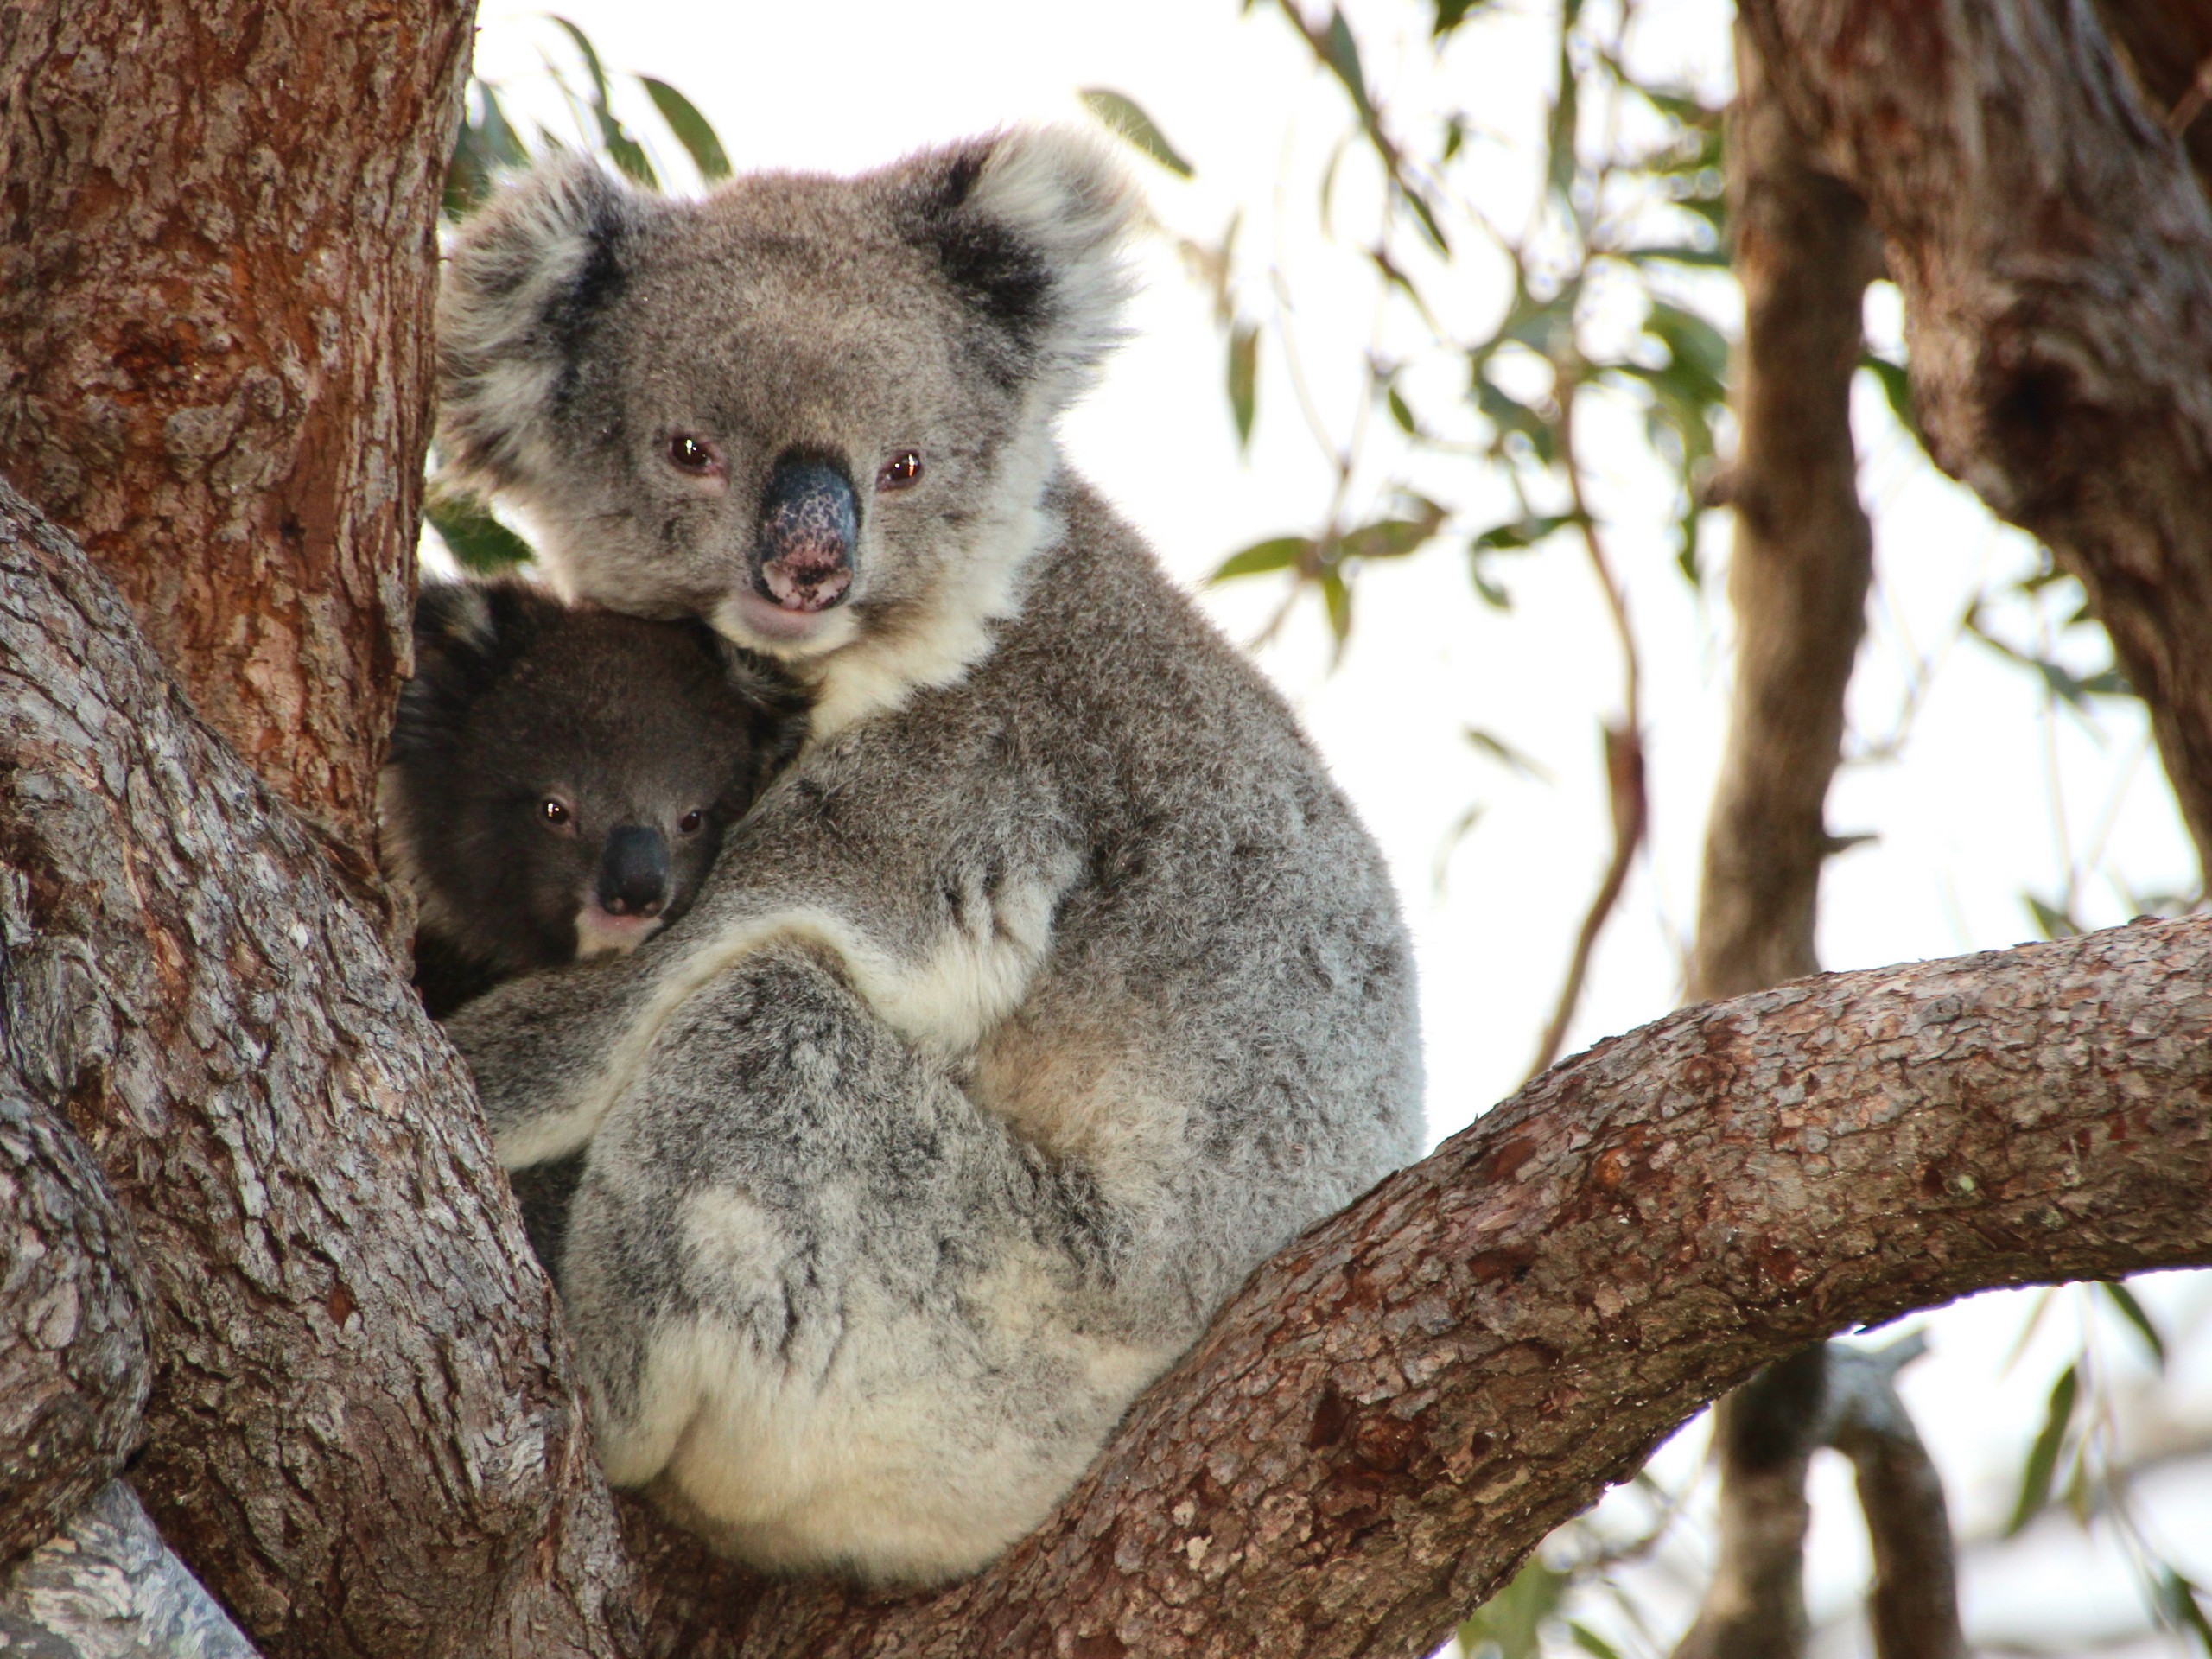 Koalas seen on a wildlife watching tour at South Australia